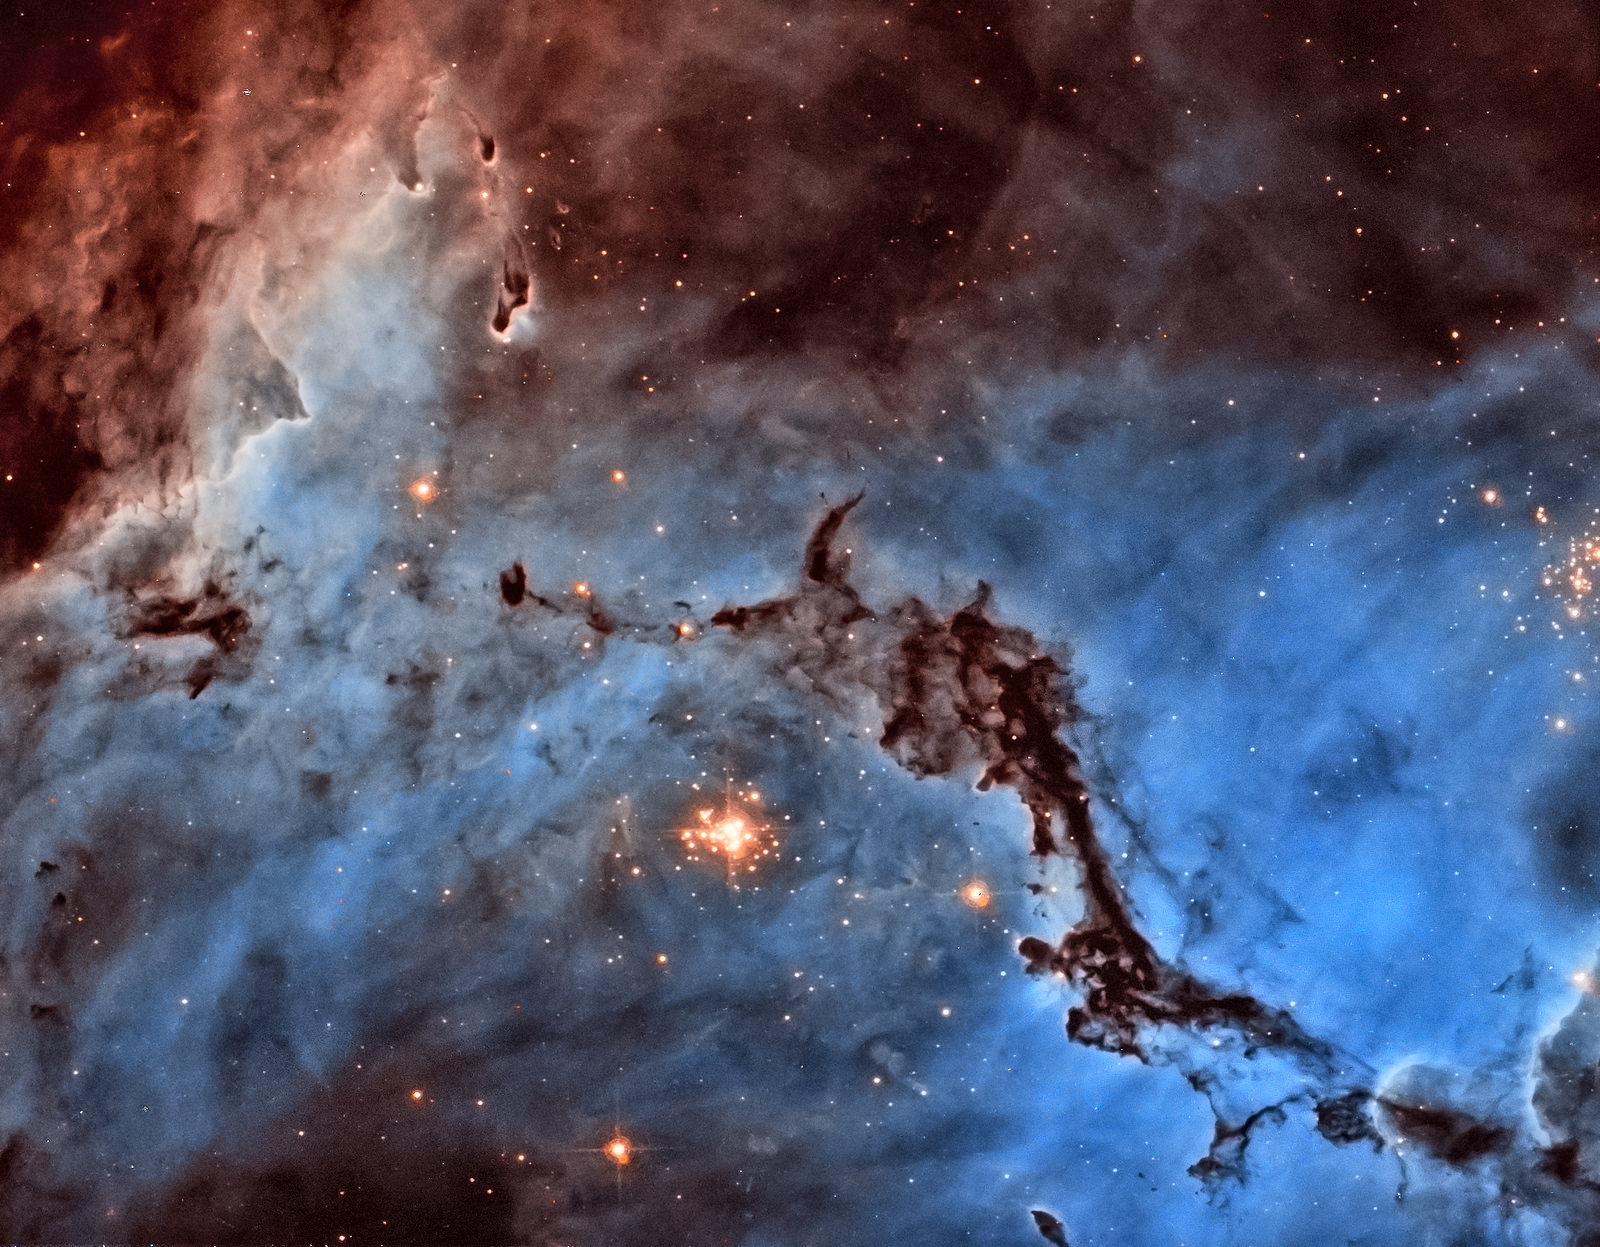 Ūkas NGC 1763. ©Josh Lake, Hubble, NASA